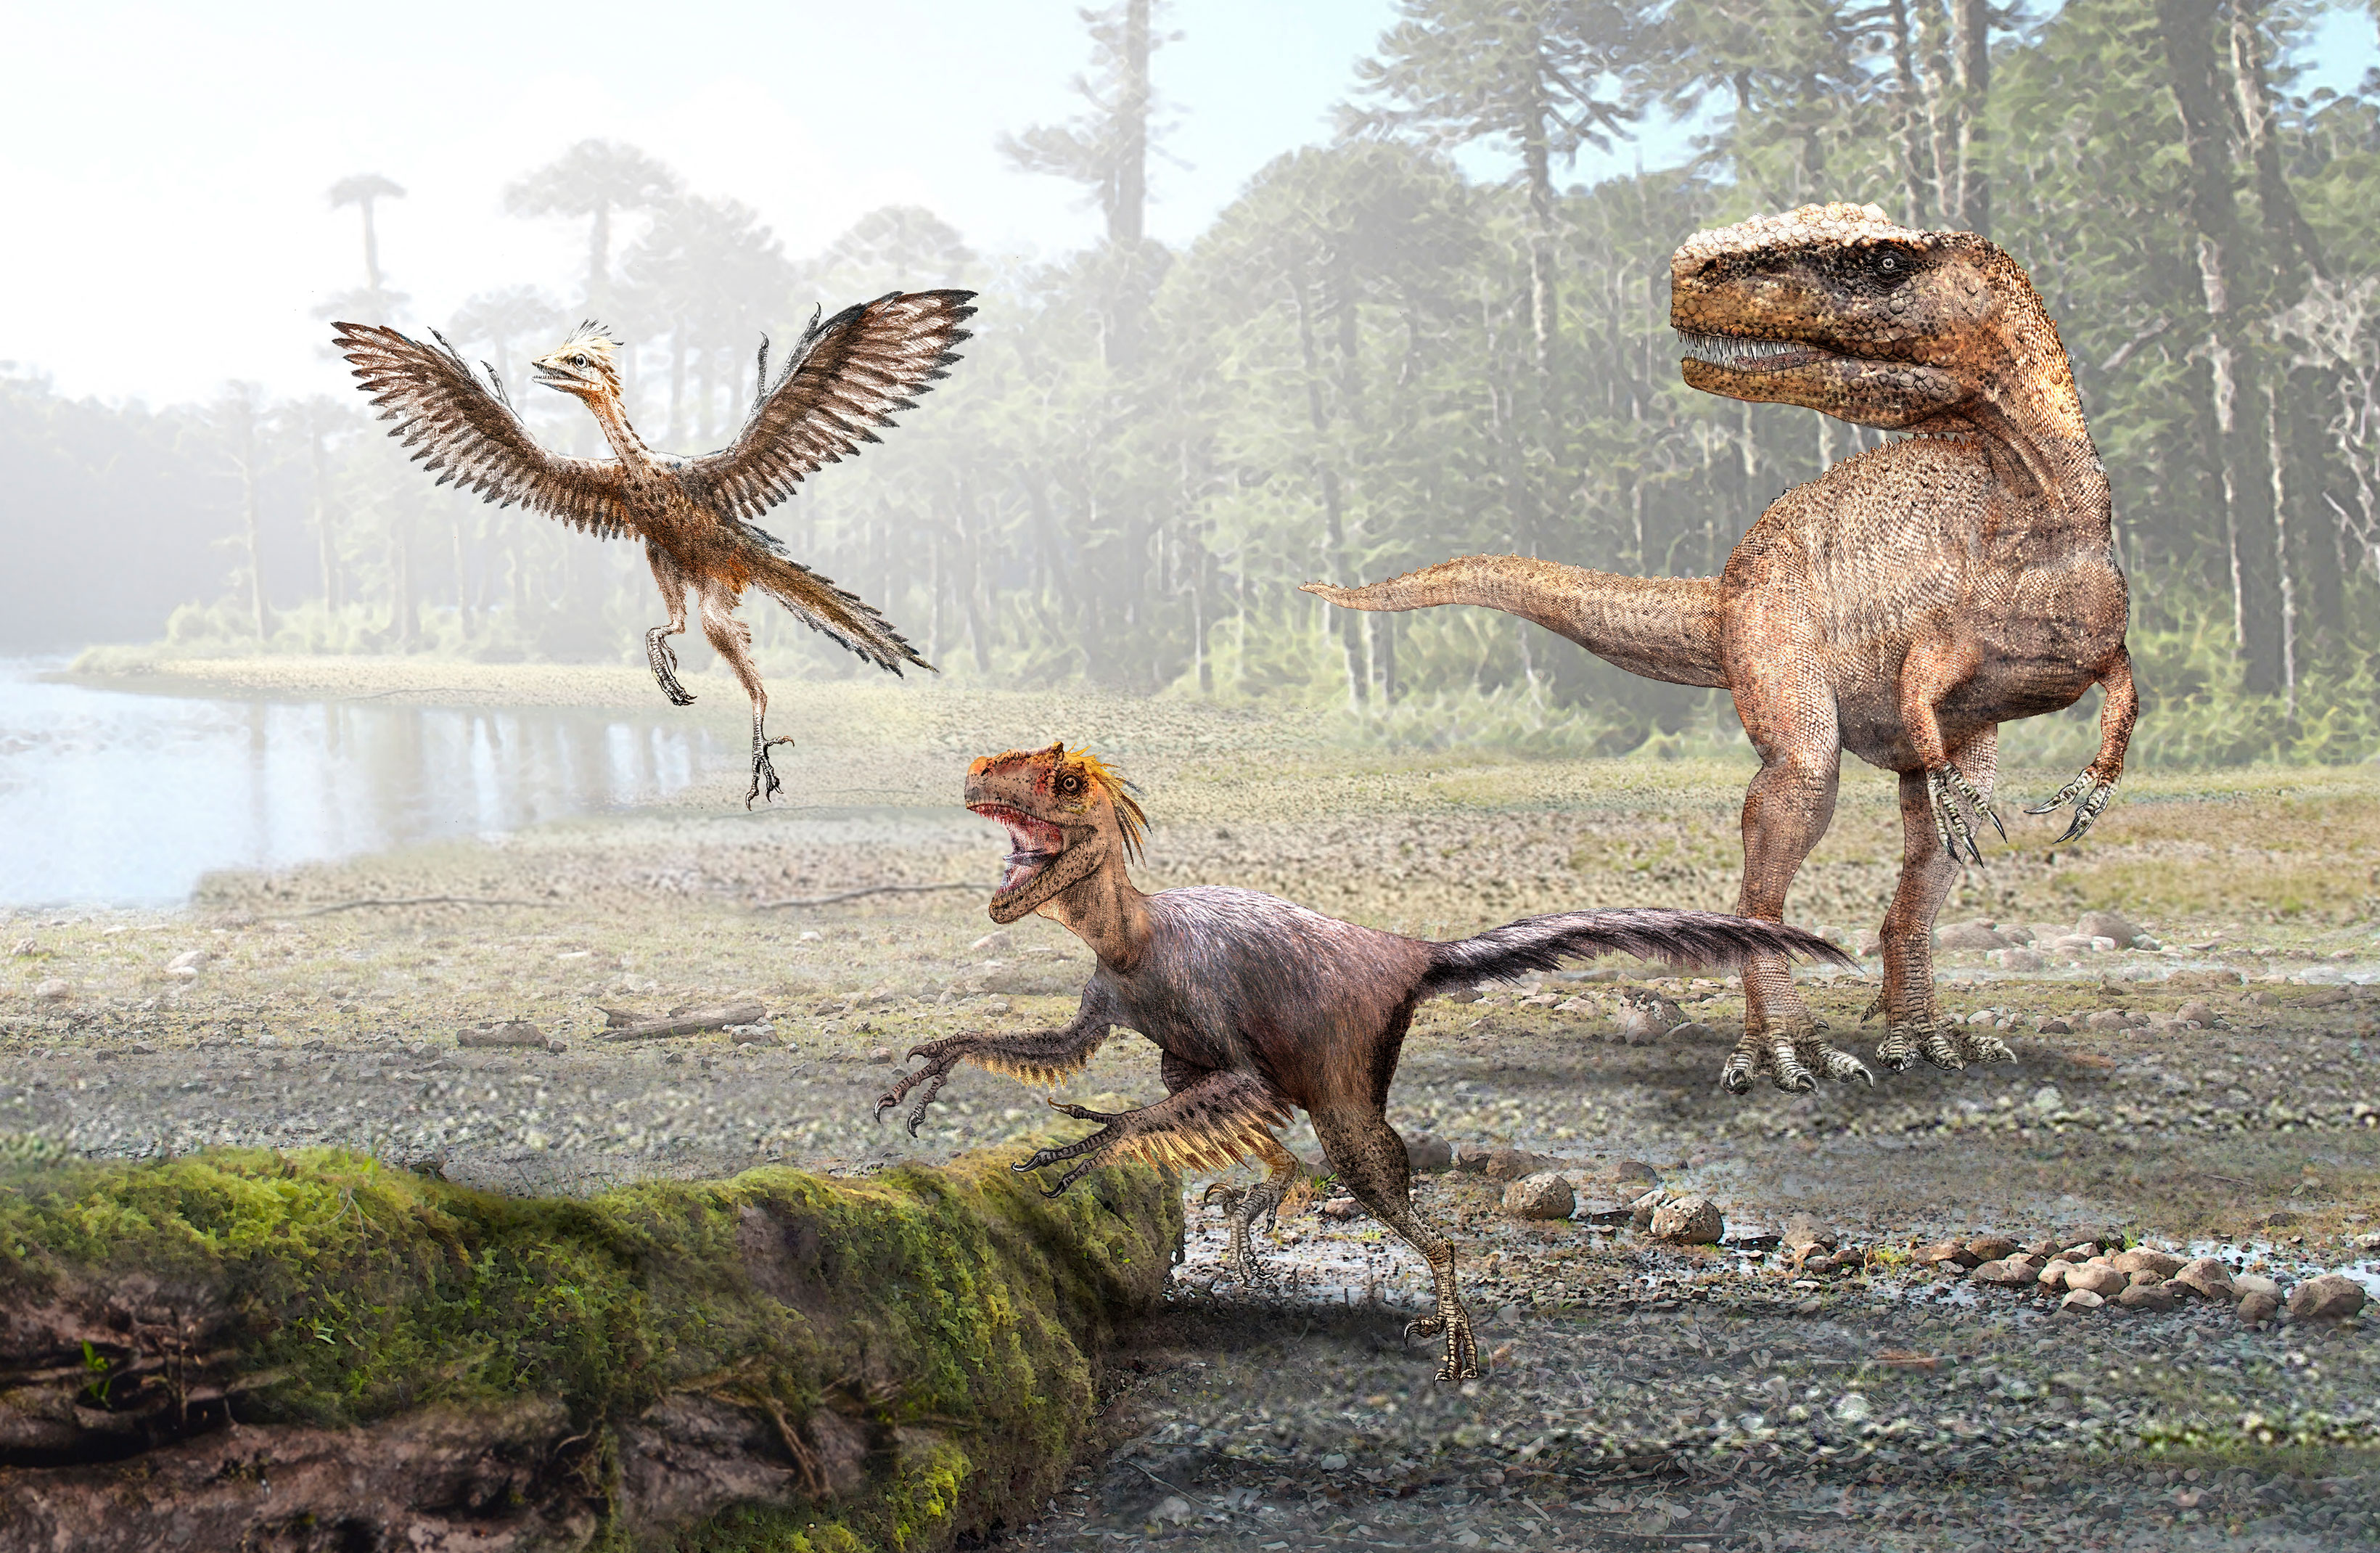 Evolución de la endotermia explicaría transición de los grandes dinosaurios  a las aves modernas – Facultad de Ciencias Biológicas